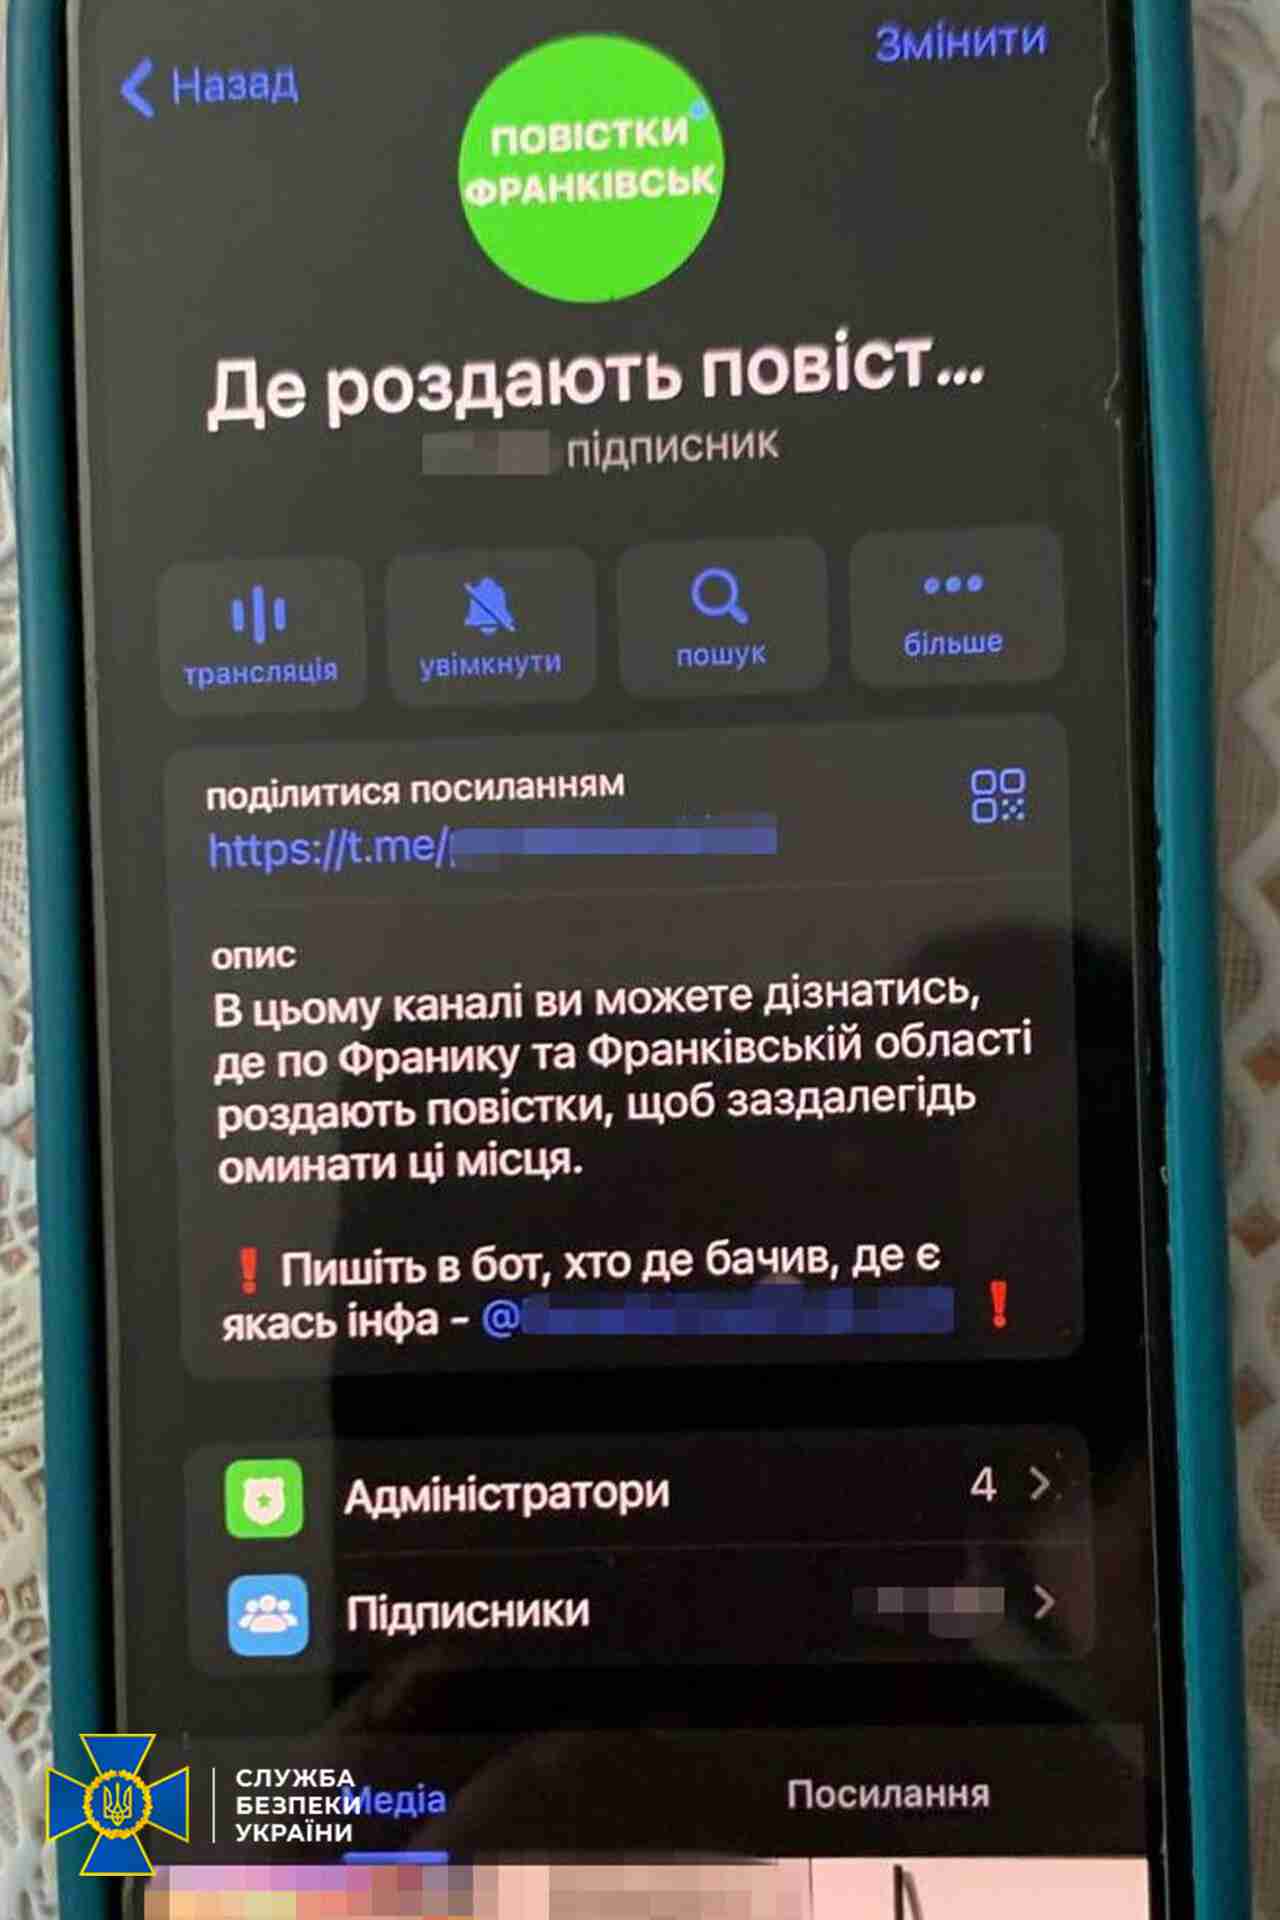 Спецслужби заблокували Телеграм-канали, де повідомляли про місця вручення повісток (ФОТО)